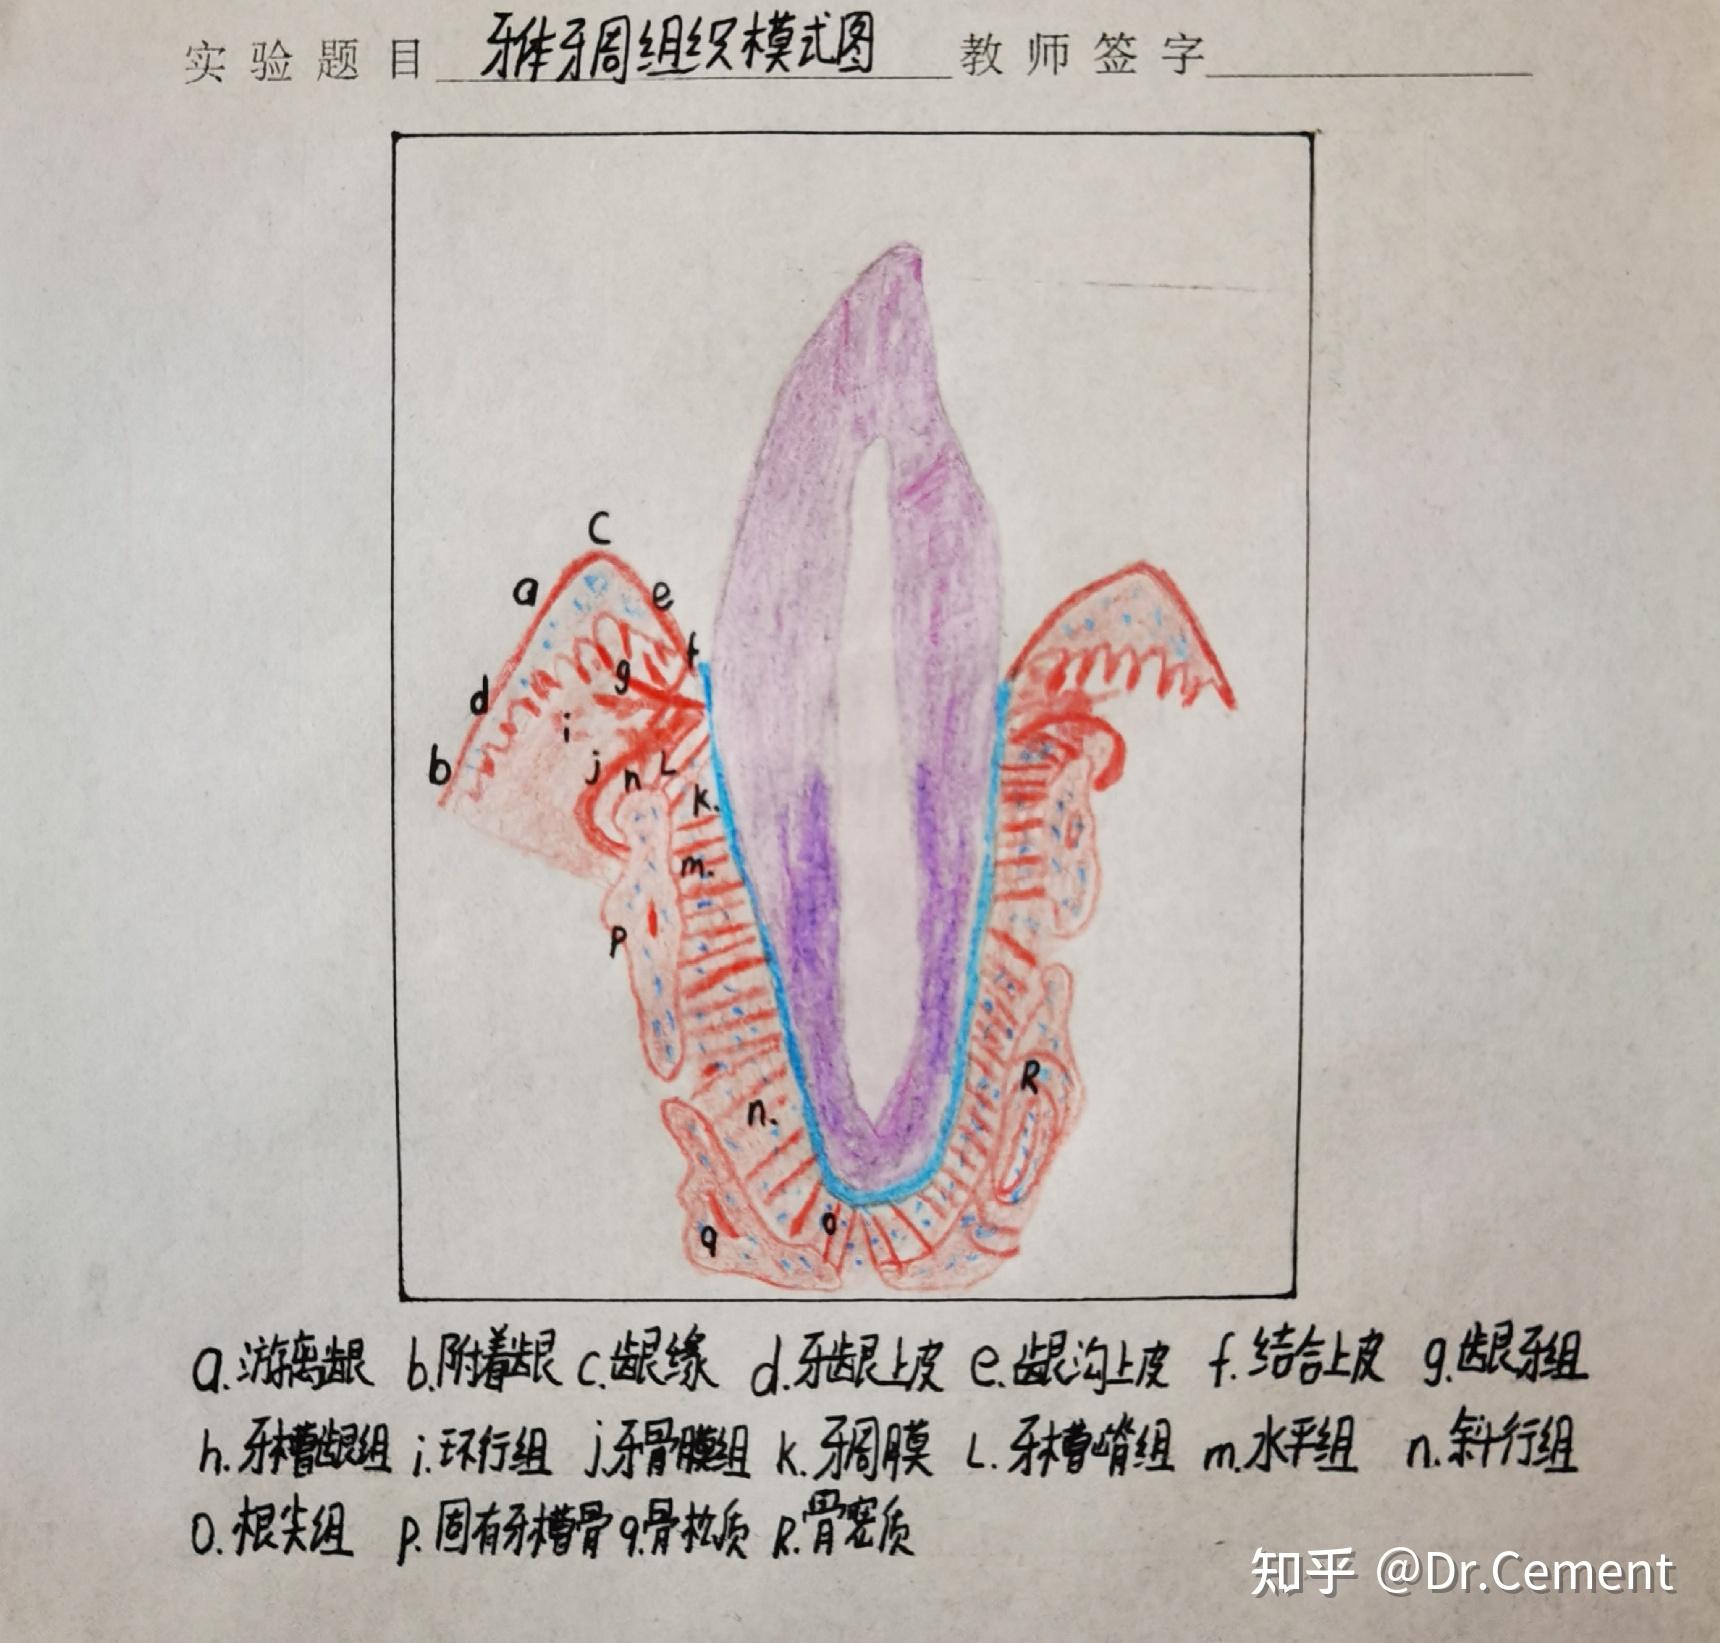 医学生红蓝铅笔绘图组织胚胎学病理学口腔组织病理学持续更新中